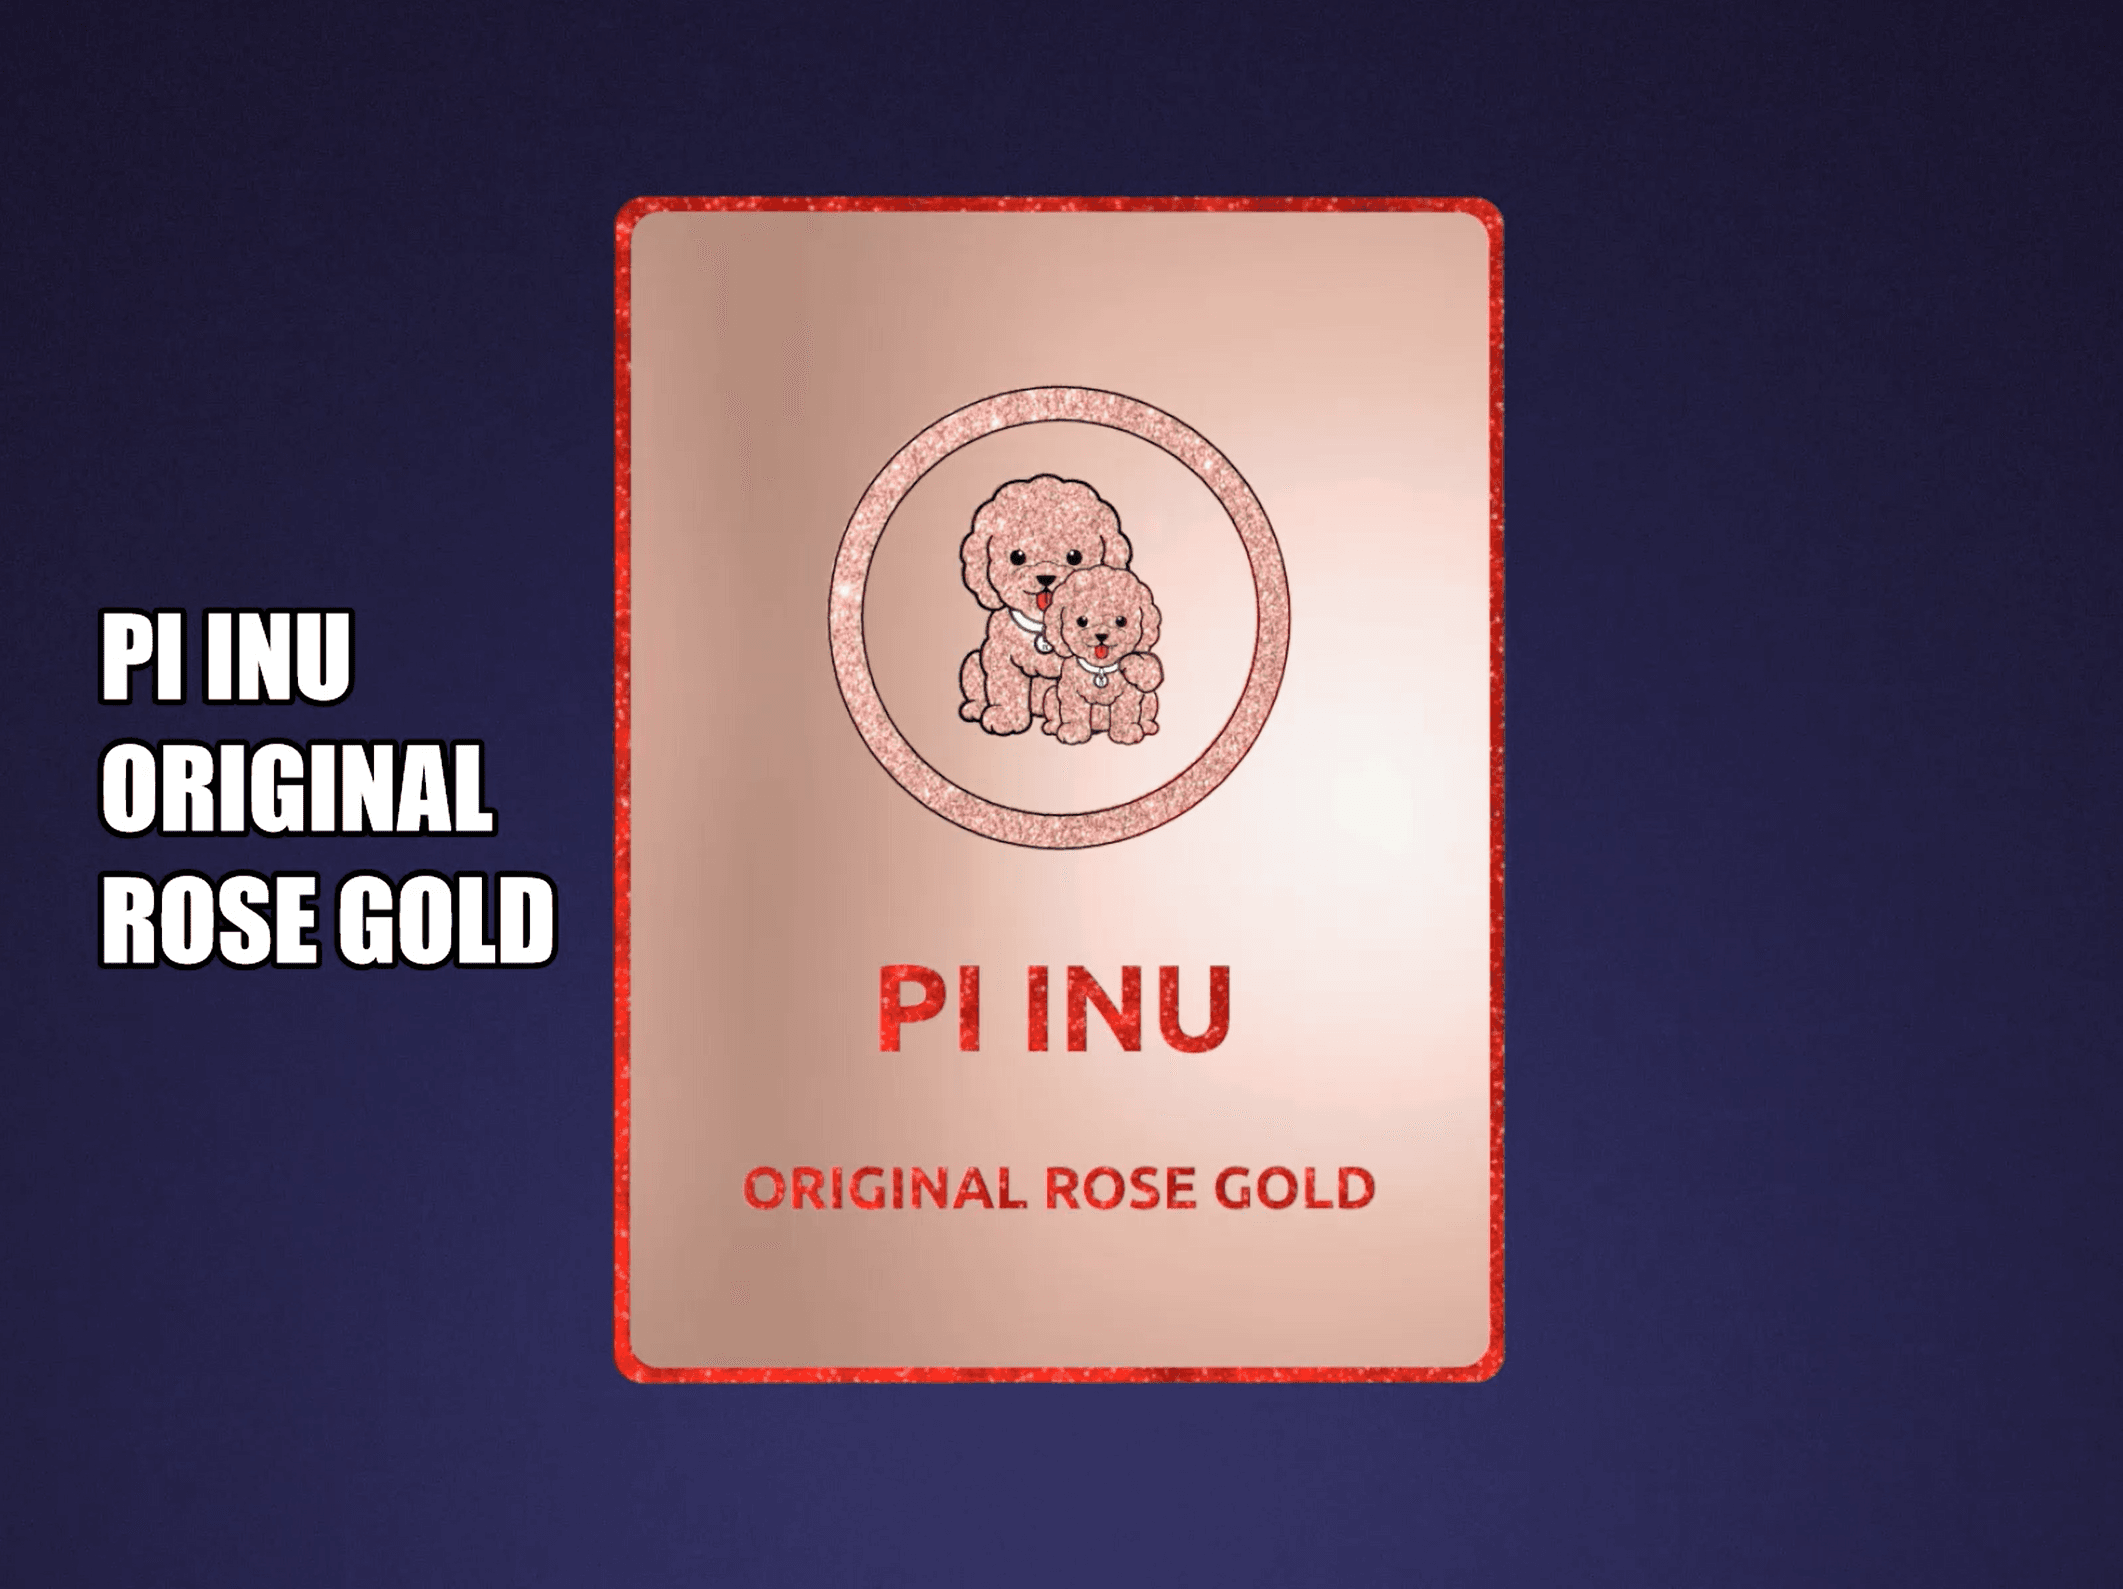 Pi INU Original Rose Gold Card